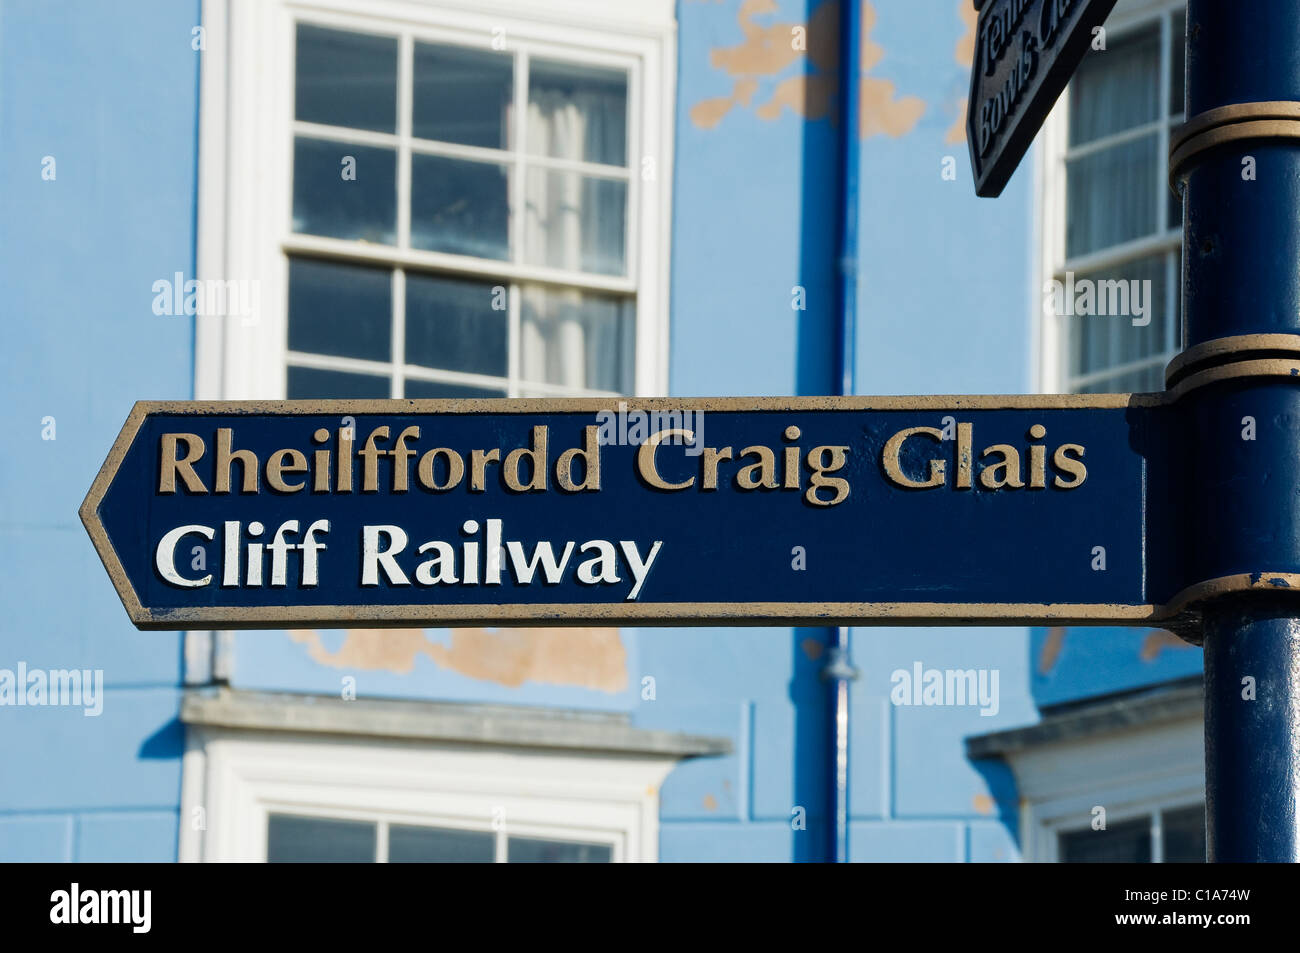 Vicino alle indicazioni per le informazioni turistiche che indicano Cliff Railway Aberystwyth Cardioganshire MID Wales UK Regno Unito GB Gran Bretagna Foto Stock